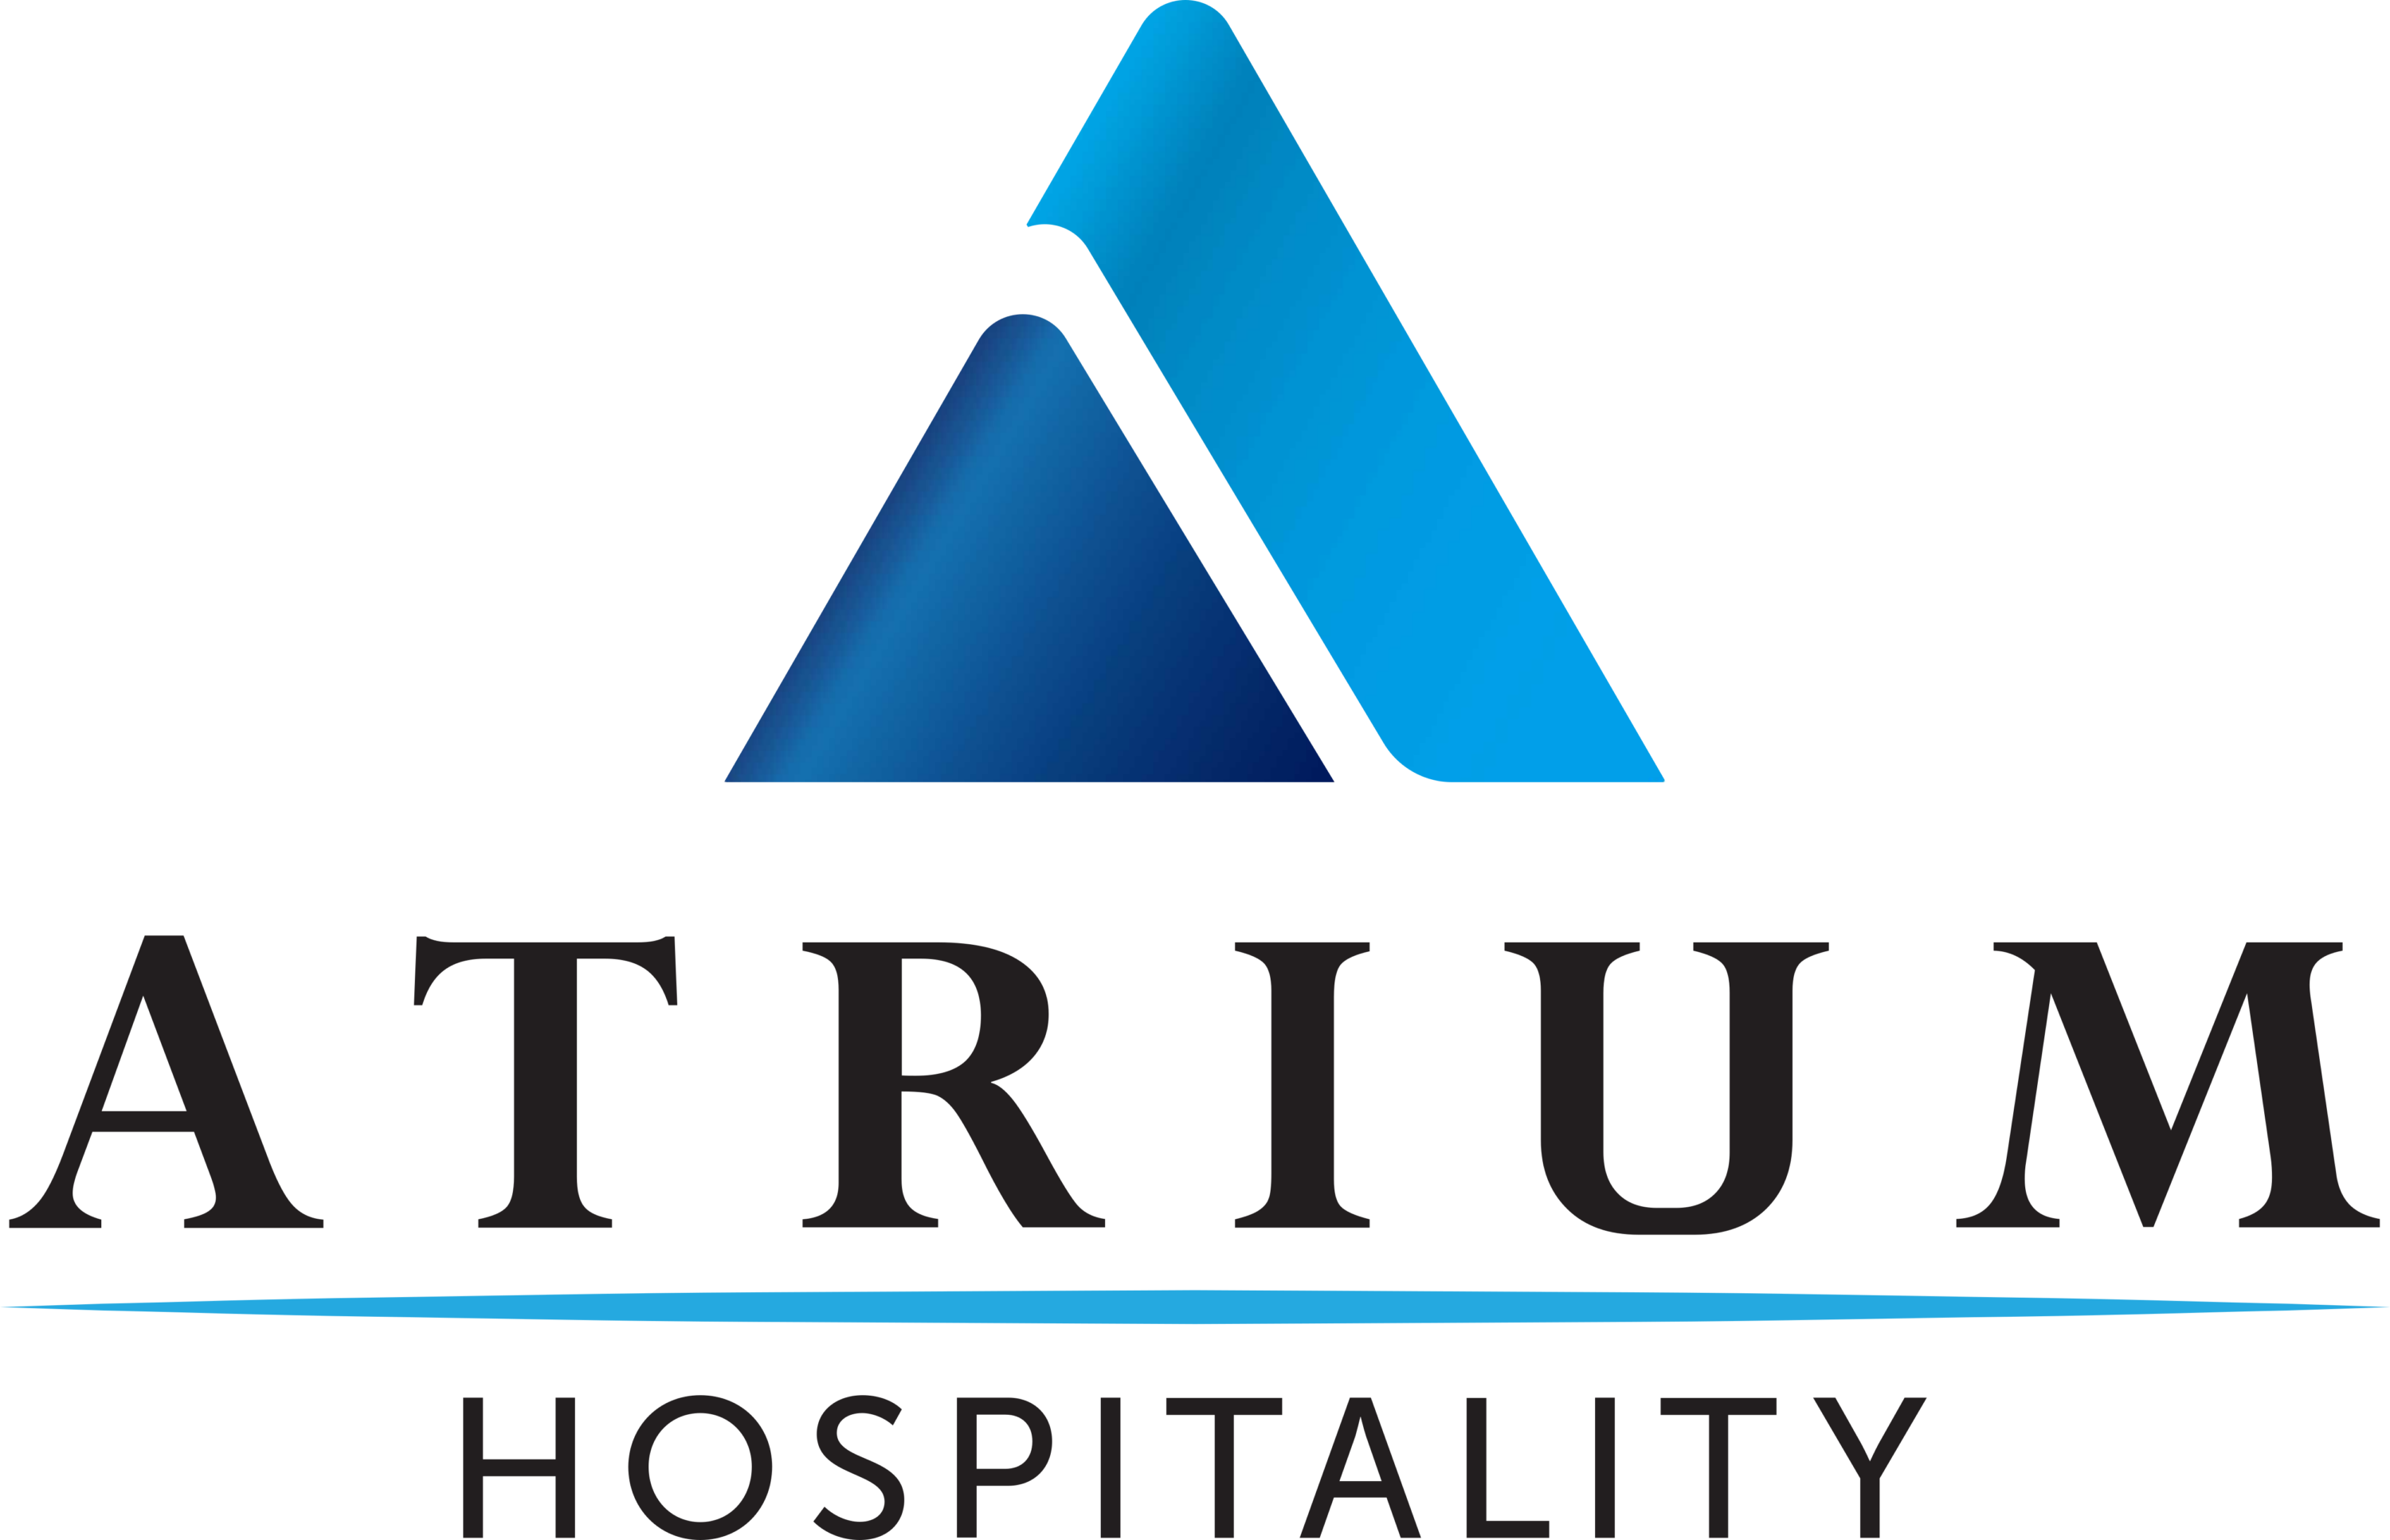 Atrium Hospitality Logo